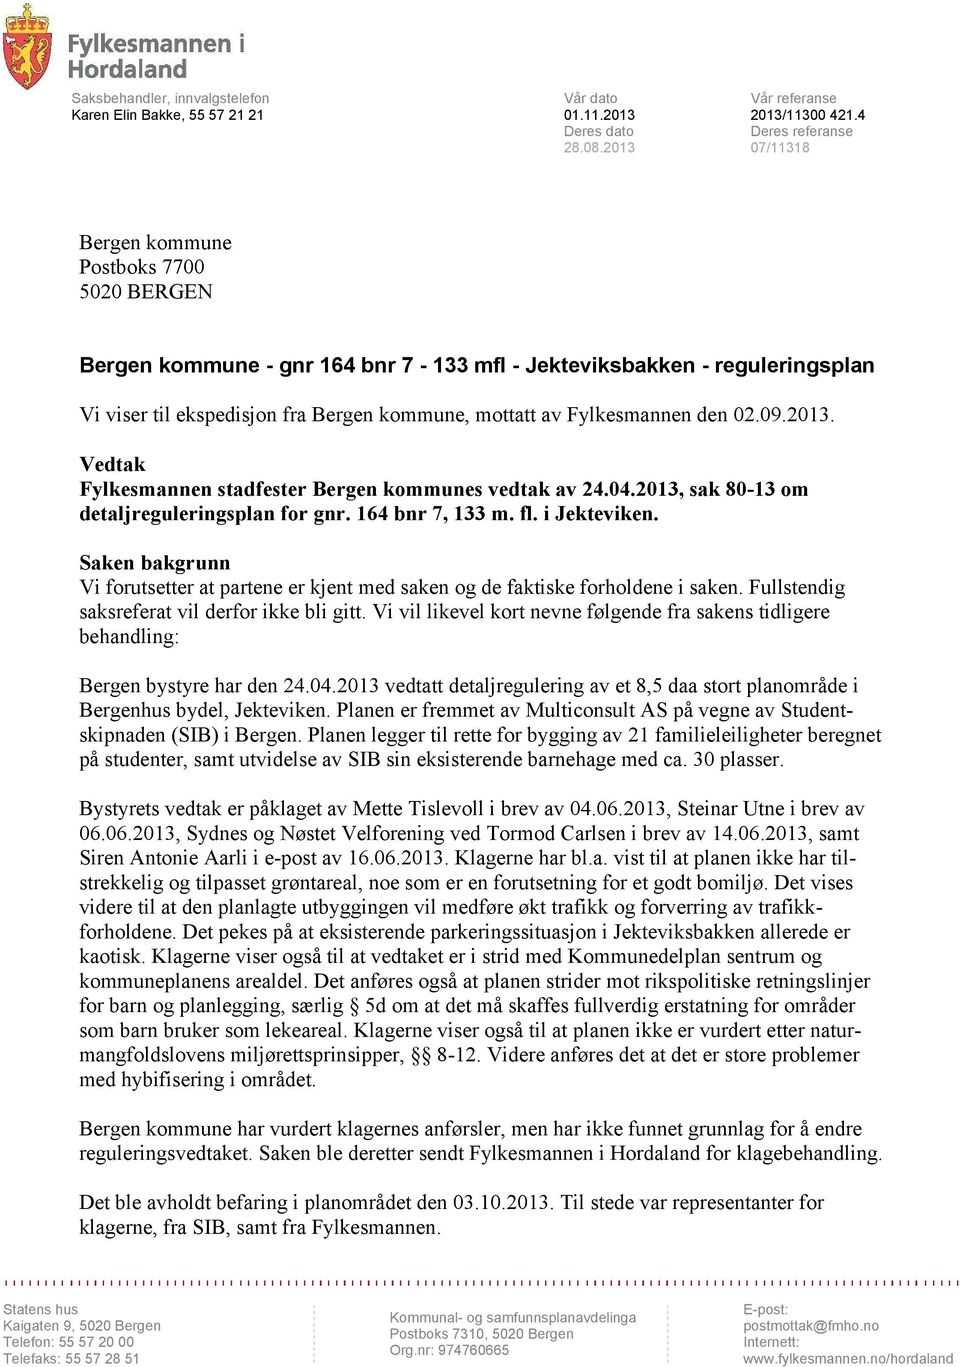 Fylkesmannen den 02.09.2013. Vedtak Fylkesmannen stadfester Bergen kommunes vedtak av 24.04.2013, sak 80-13 om detaljreguleringsplan for gnr. 164 bnr 7, 133 m. fl. i Jekteviken.